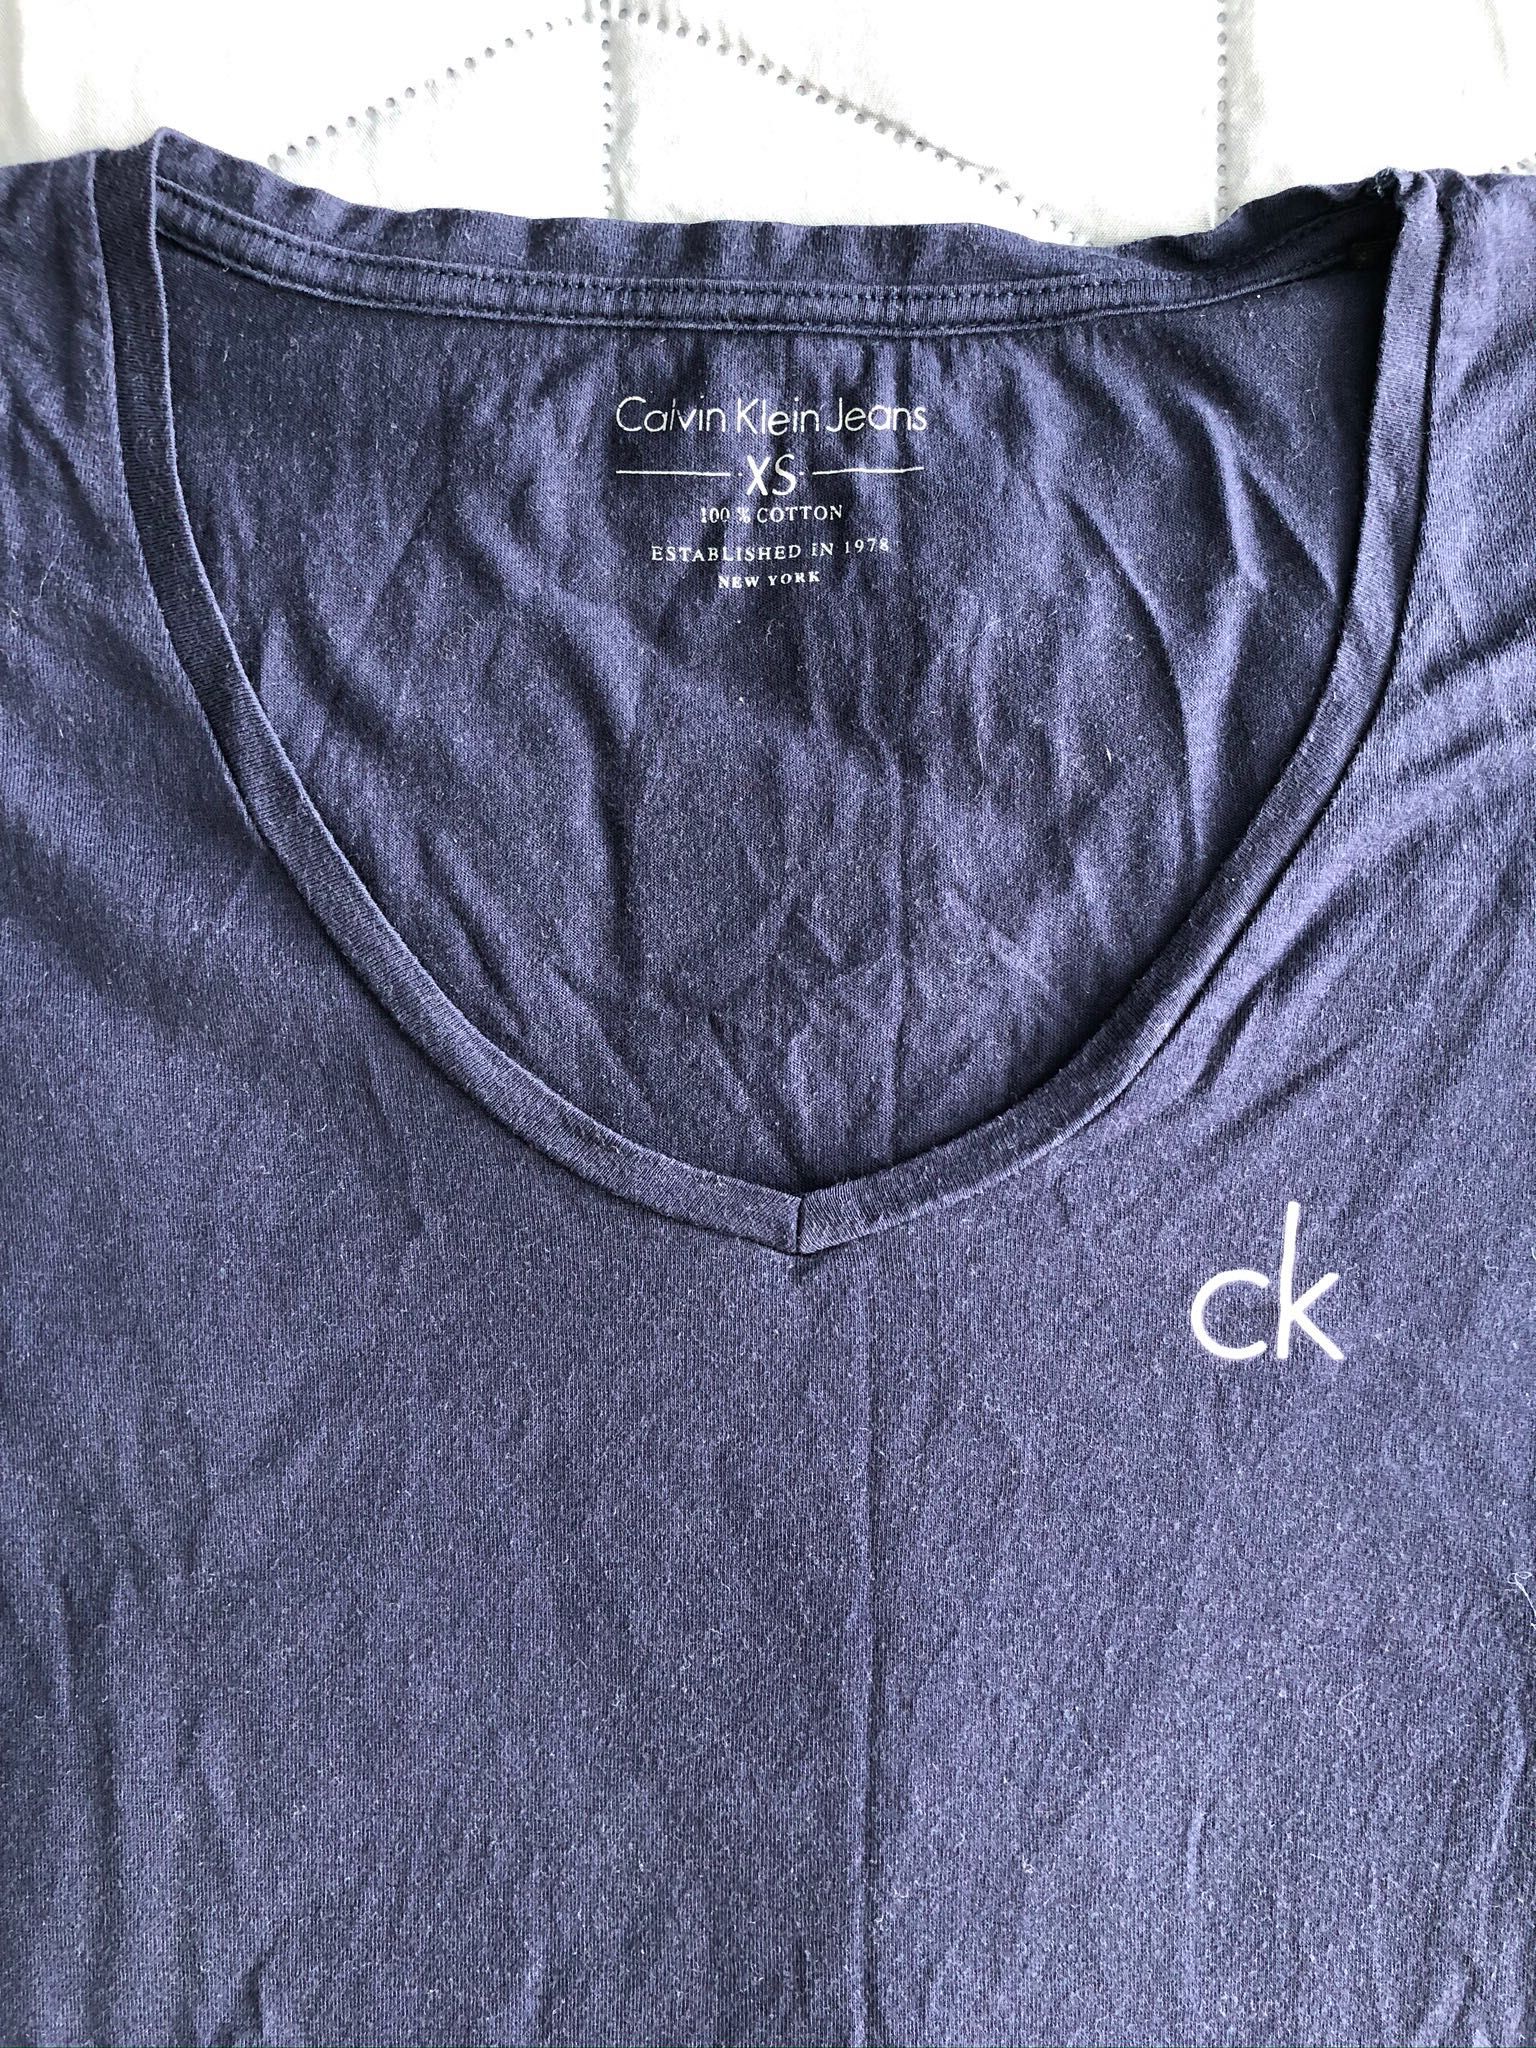 Koszulka Calvin Klein. Rozmiar XS.